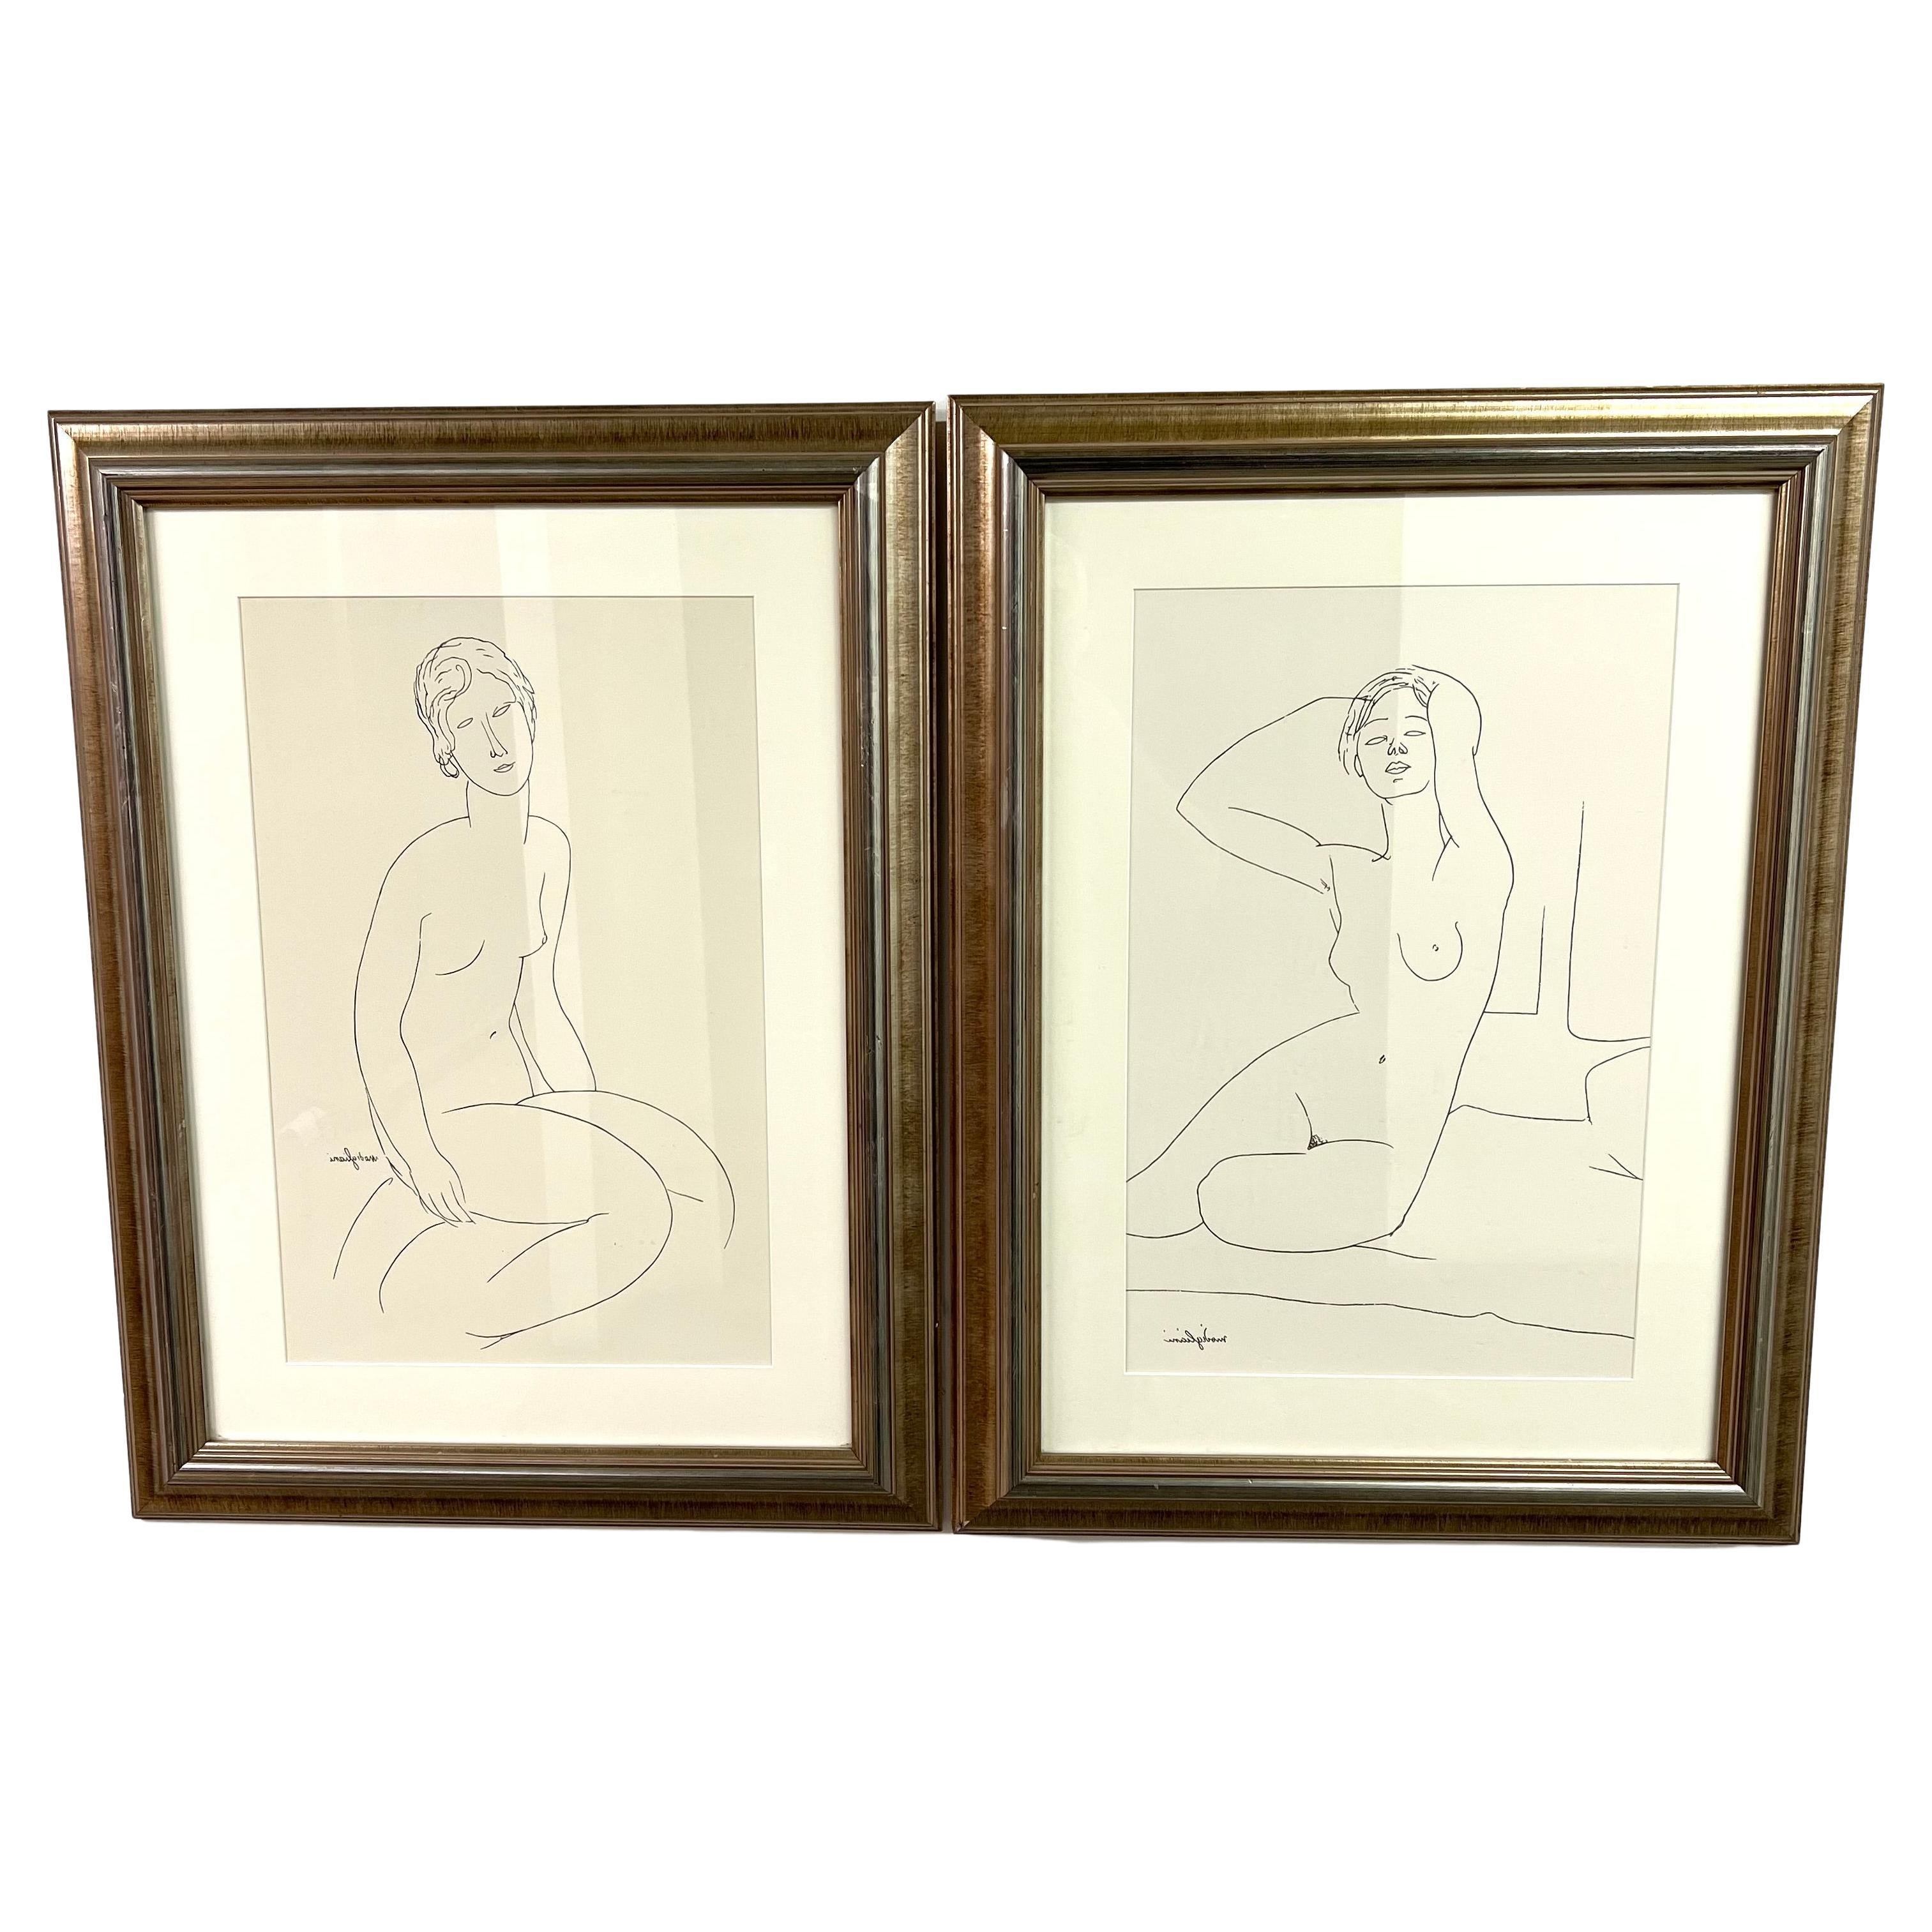 Zwei gerahmte Drucke im Stil des italienischen Künstlers Amedeo Modigliani. Gestische Strichzeichnungen von zwei weiblichen Figuren sind in passende goldfarbene Rahmen gesetzt und sehen nebeneinander großartig aus. Ein wunderbarer Akzent für jede